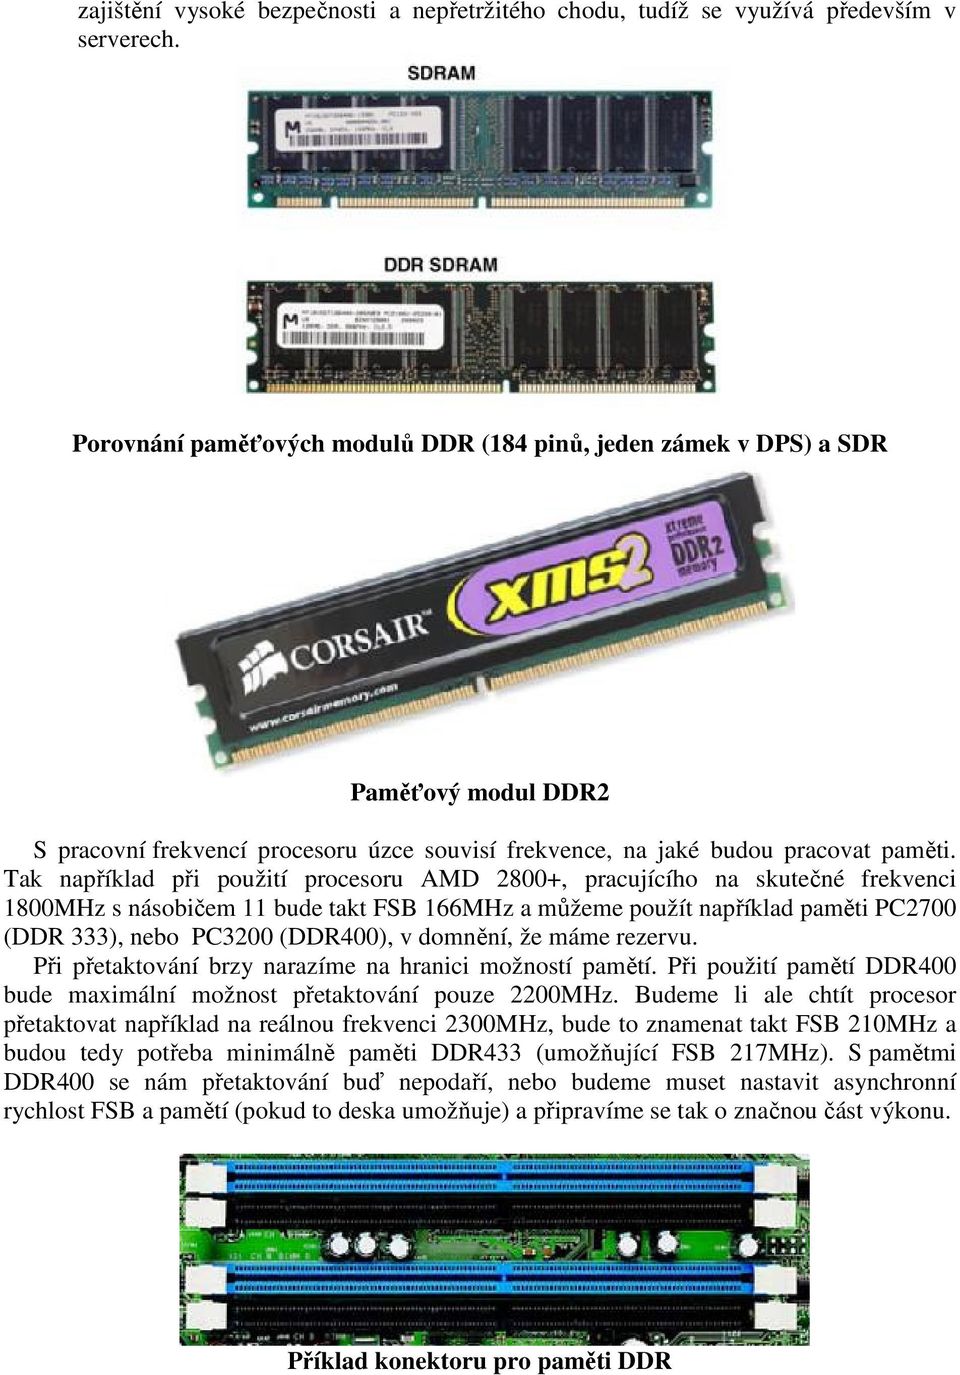 Tak například při použití procesoru AMD 2800+, pracujícího na skutečné frekvenci 1800MHz s násobičem 11 bude takt FSB 166MHz a můžeme použít například paměti PC2700 (DDR 333), nebo PC3200 (DDR400), v